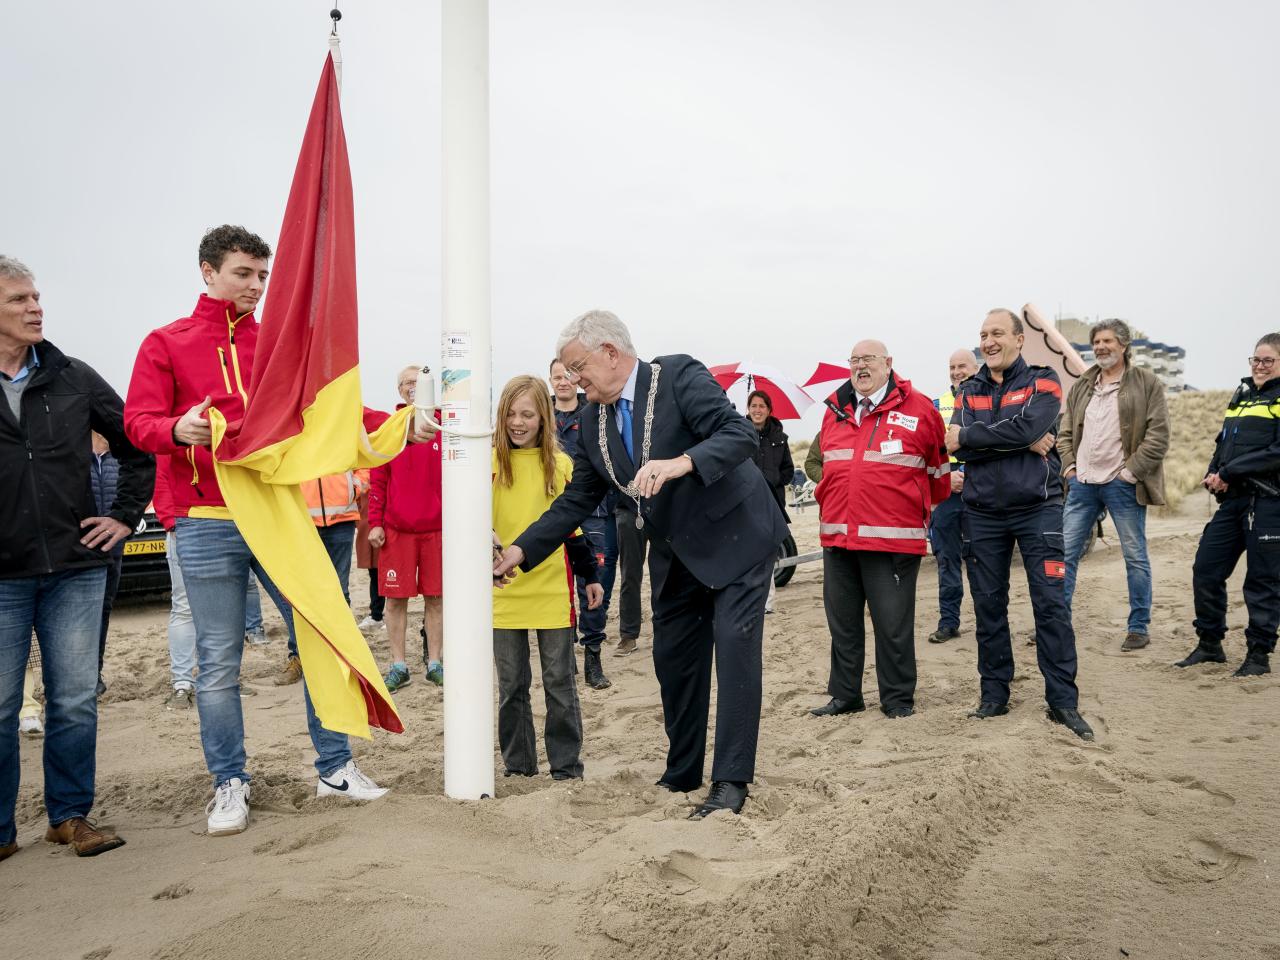 Burgemeester Van Zanen hijst de roodgele vlag